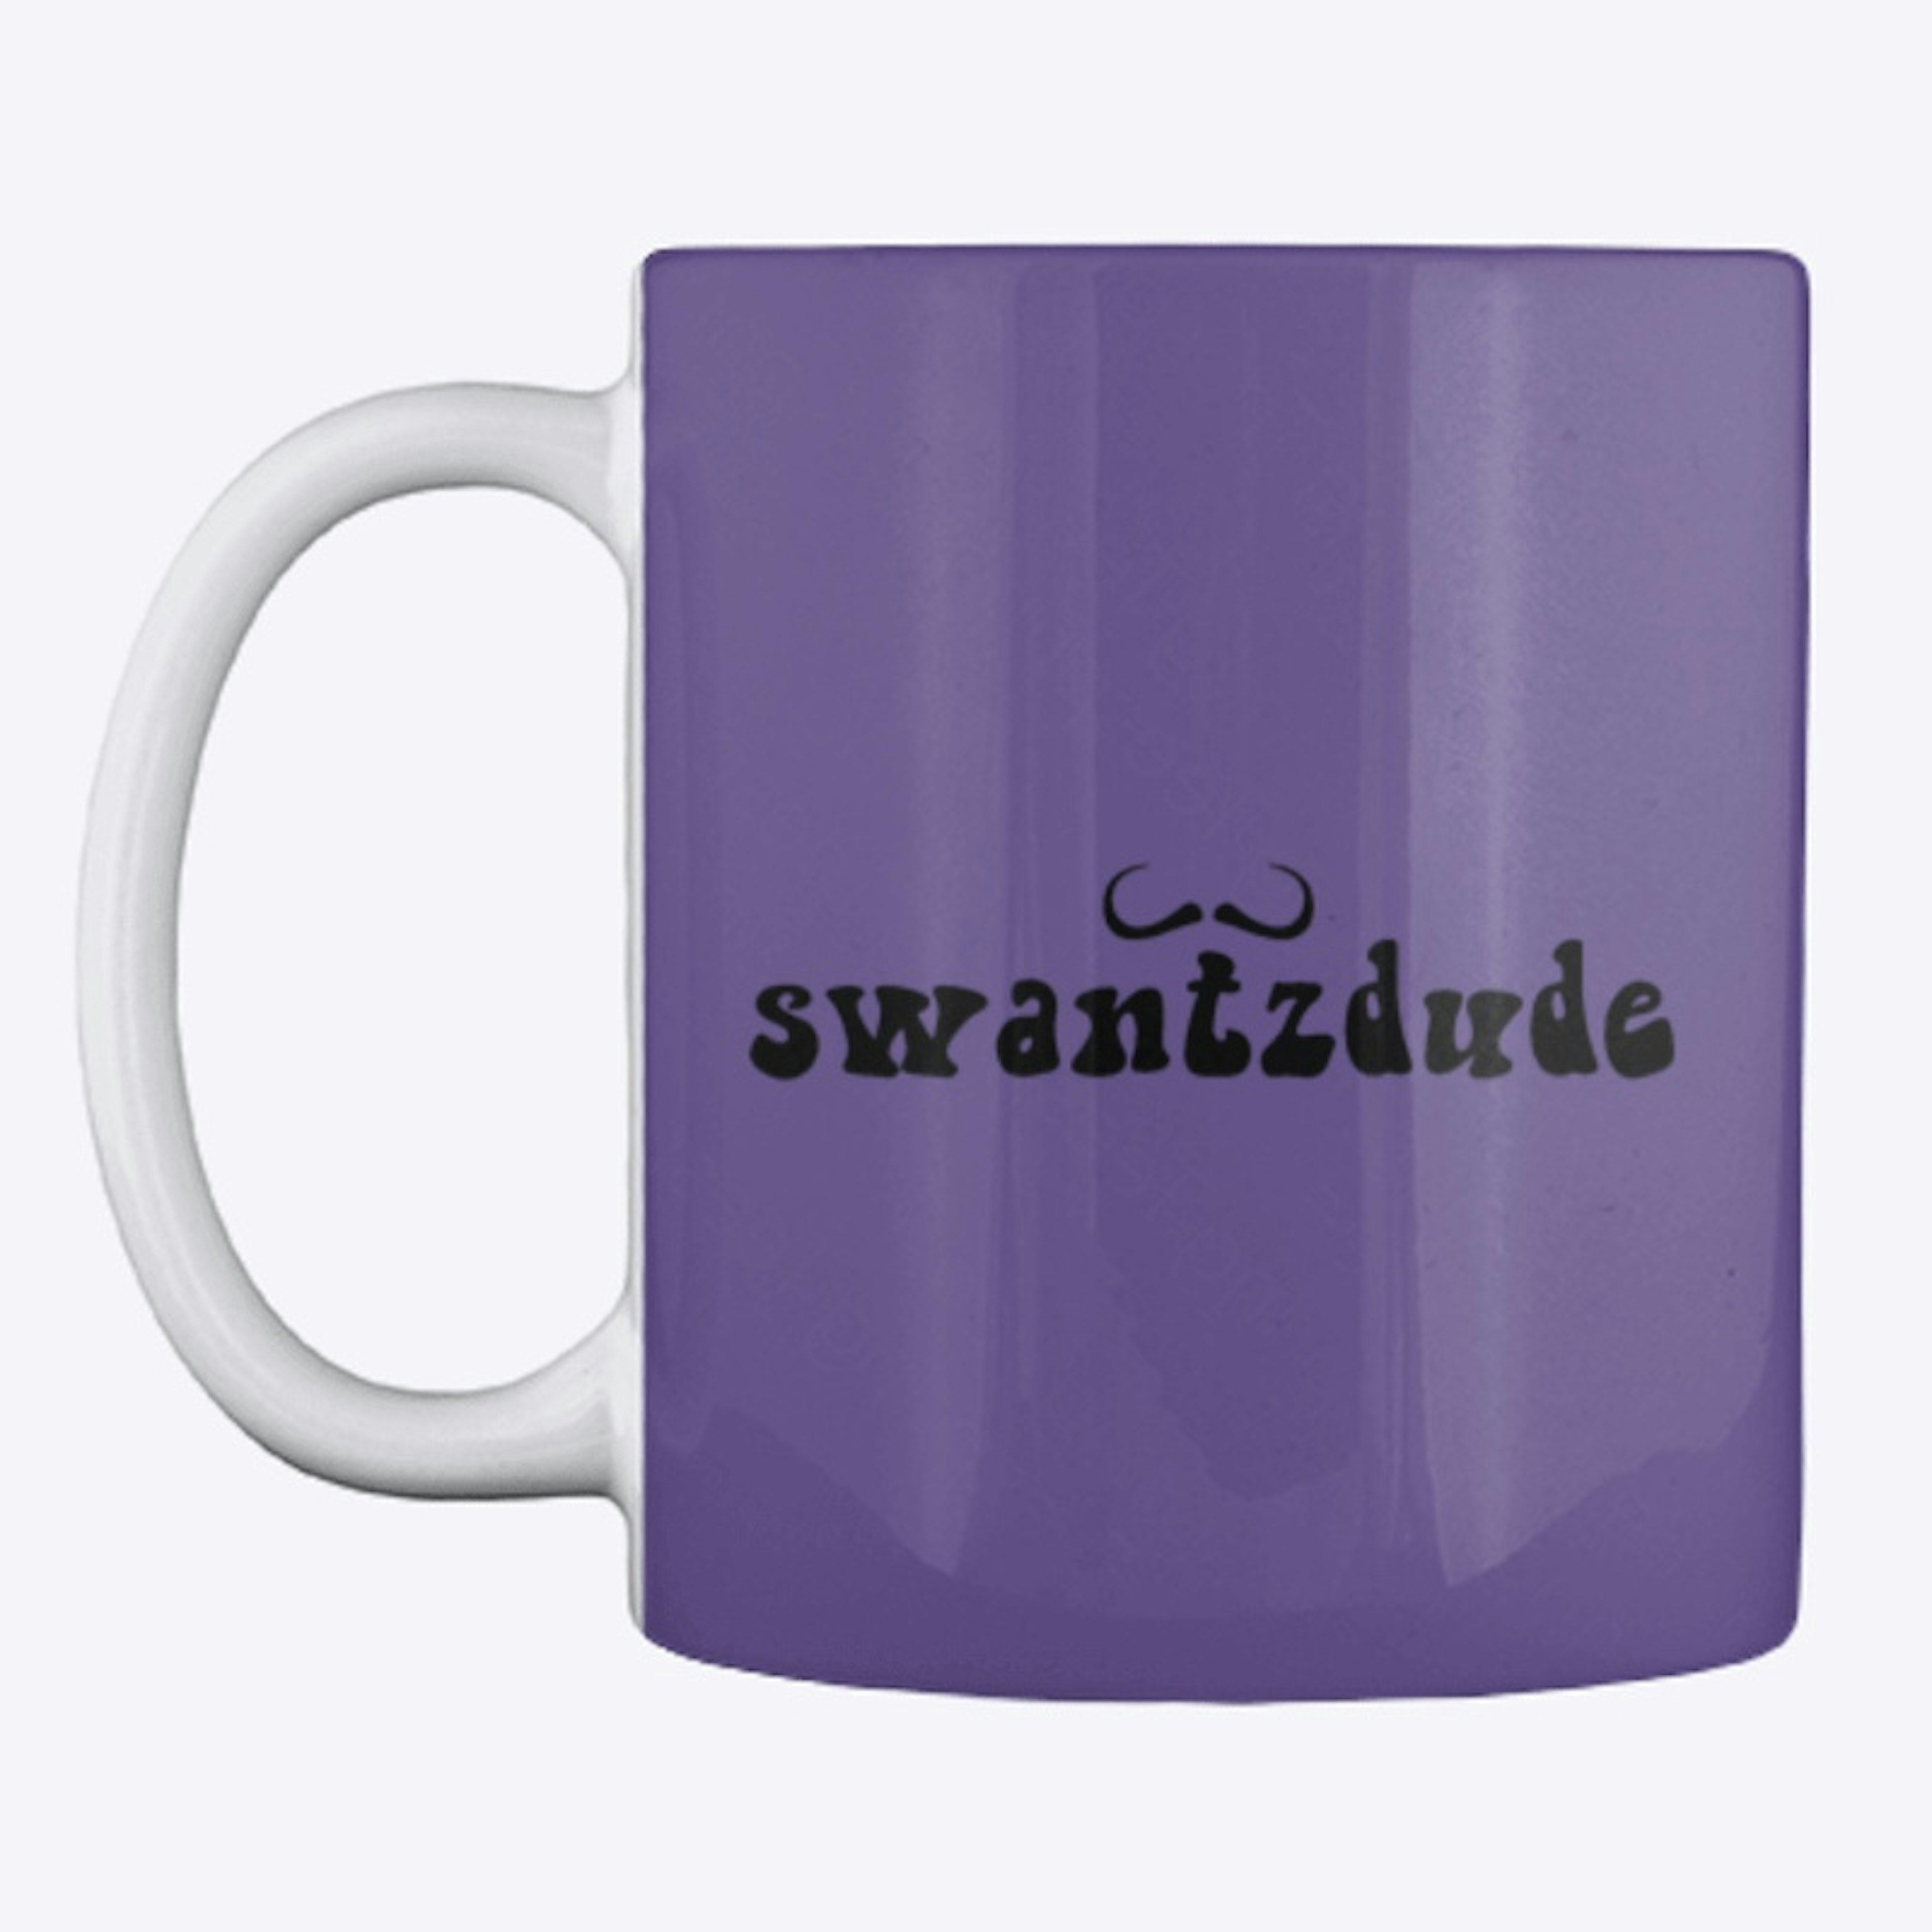 Swantz Cup Of Joe 